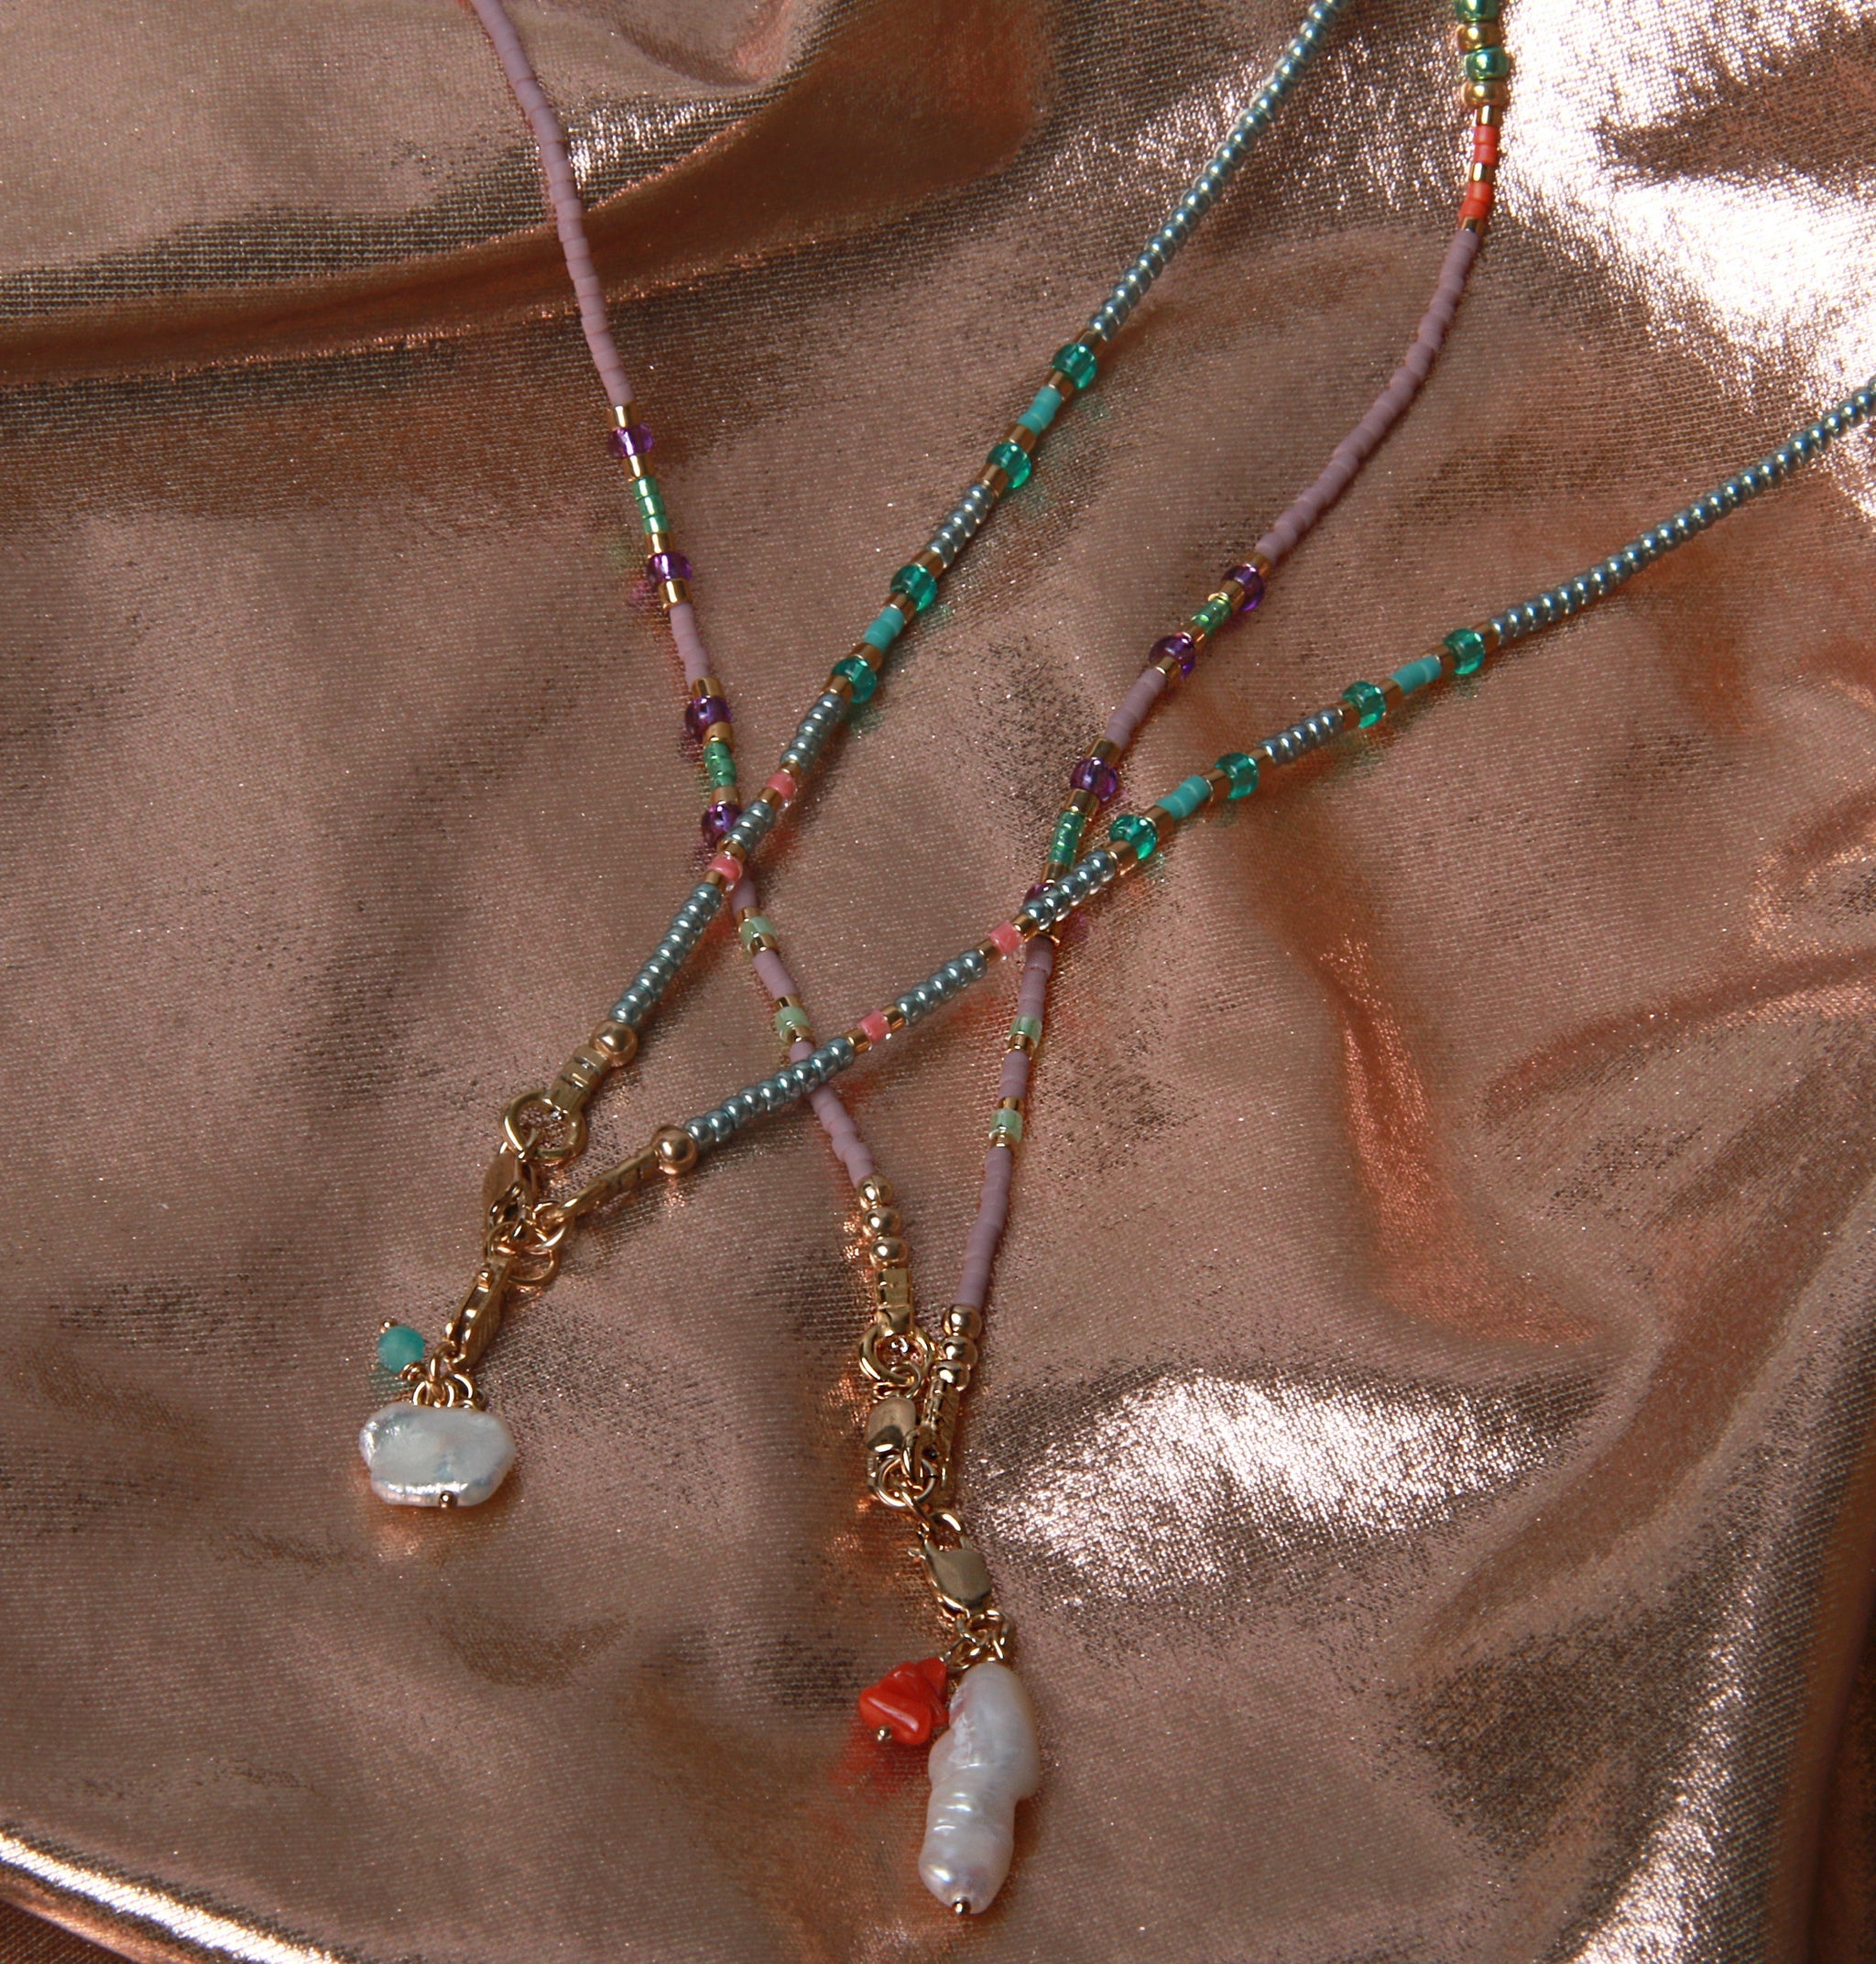 Bunte Perlenketten in türkis und lila mit Süßsswasser-Perlen am Verschluss